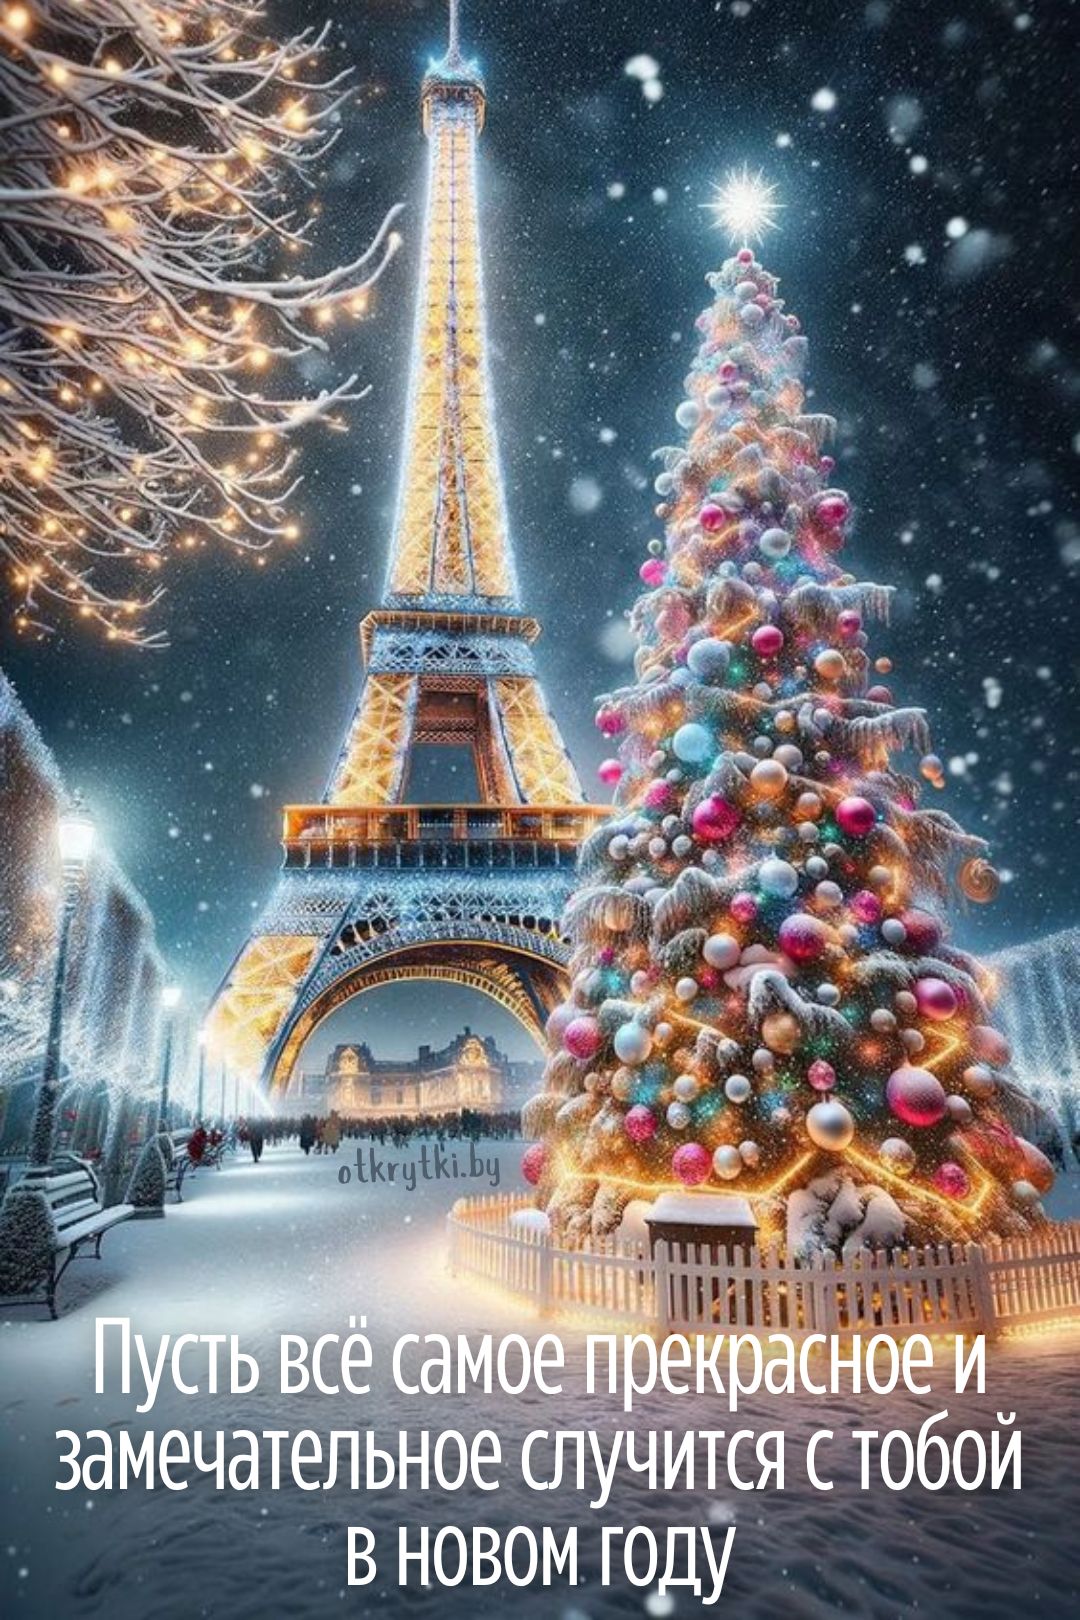 Яркая новогодняя открытка в французском стиле